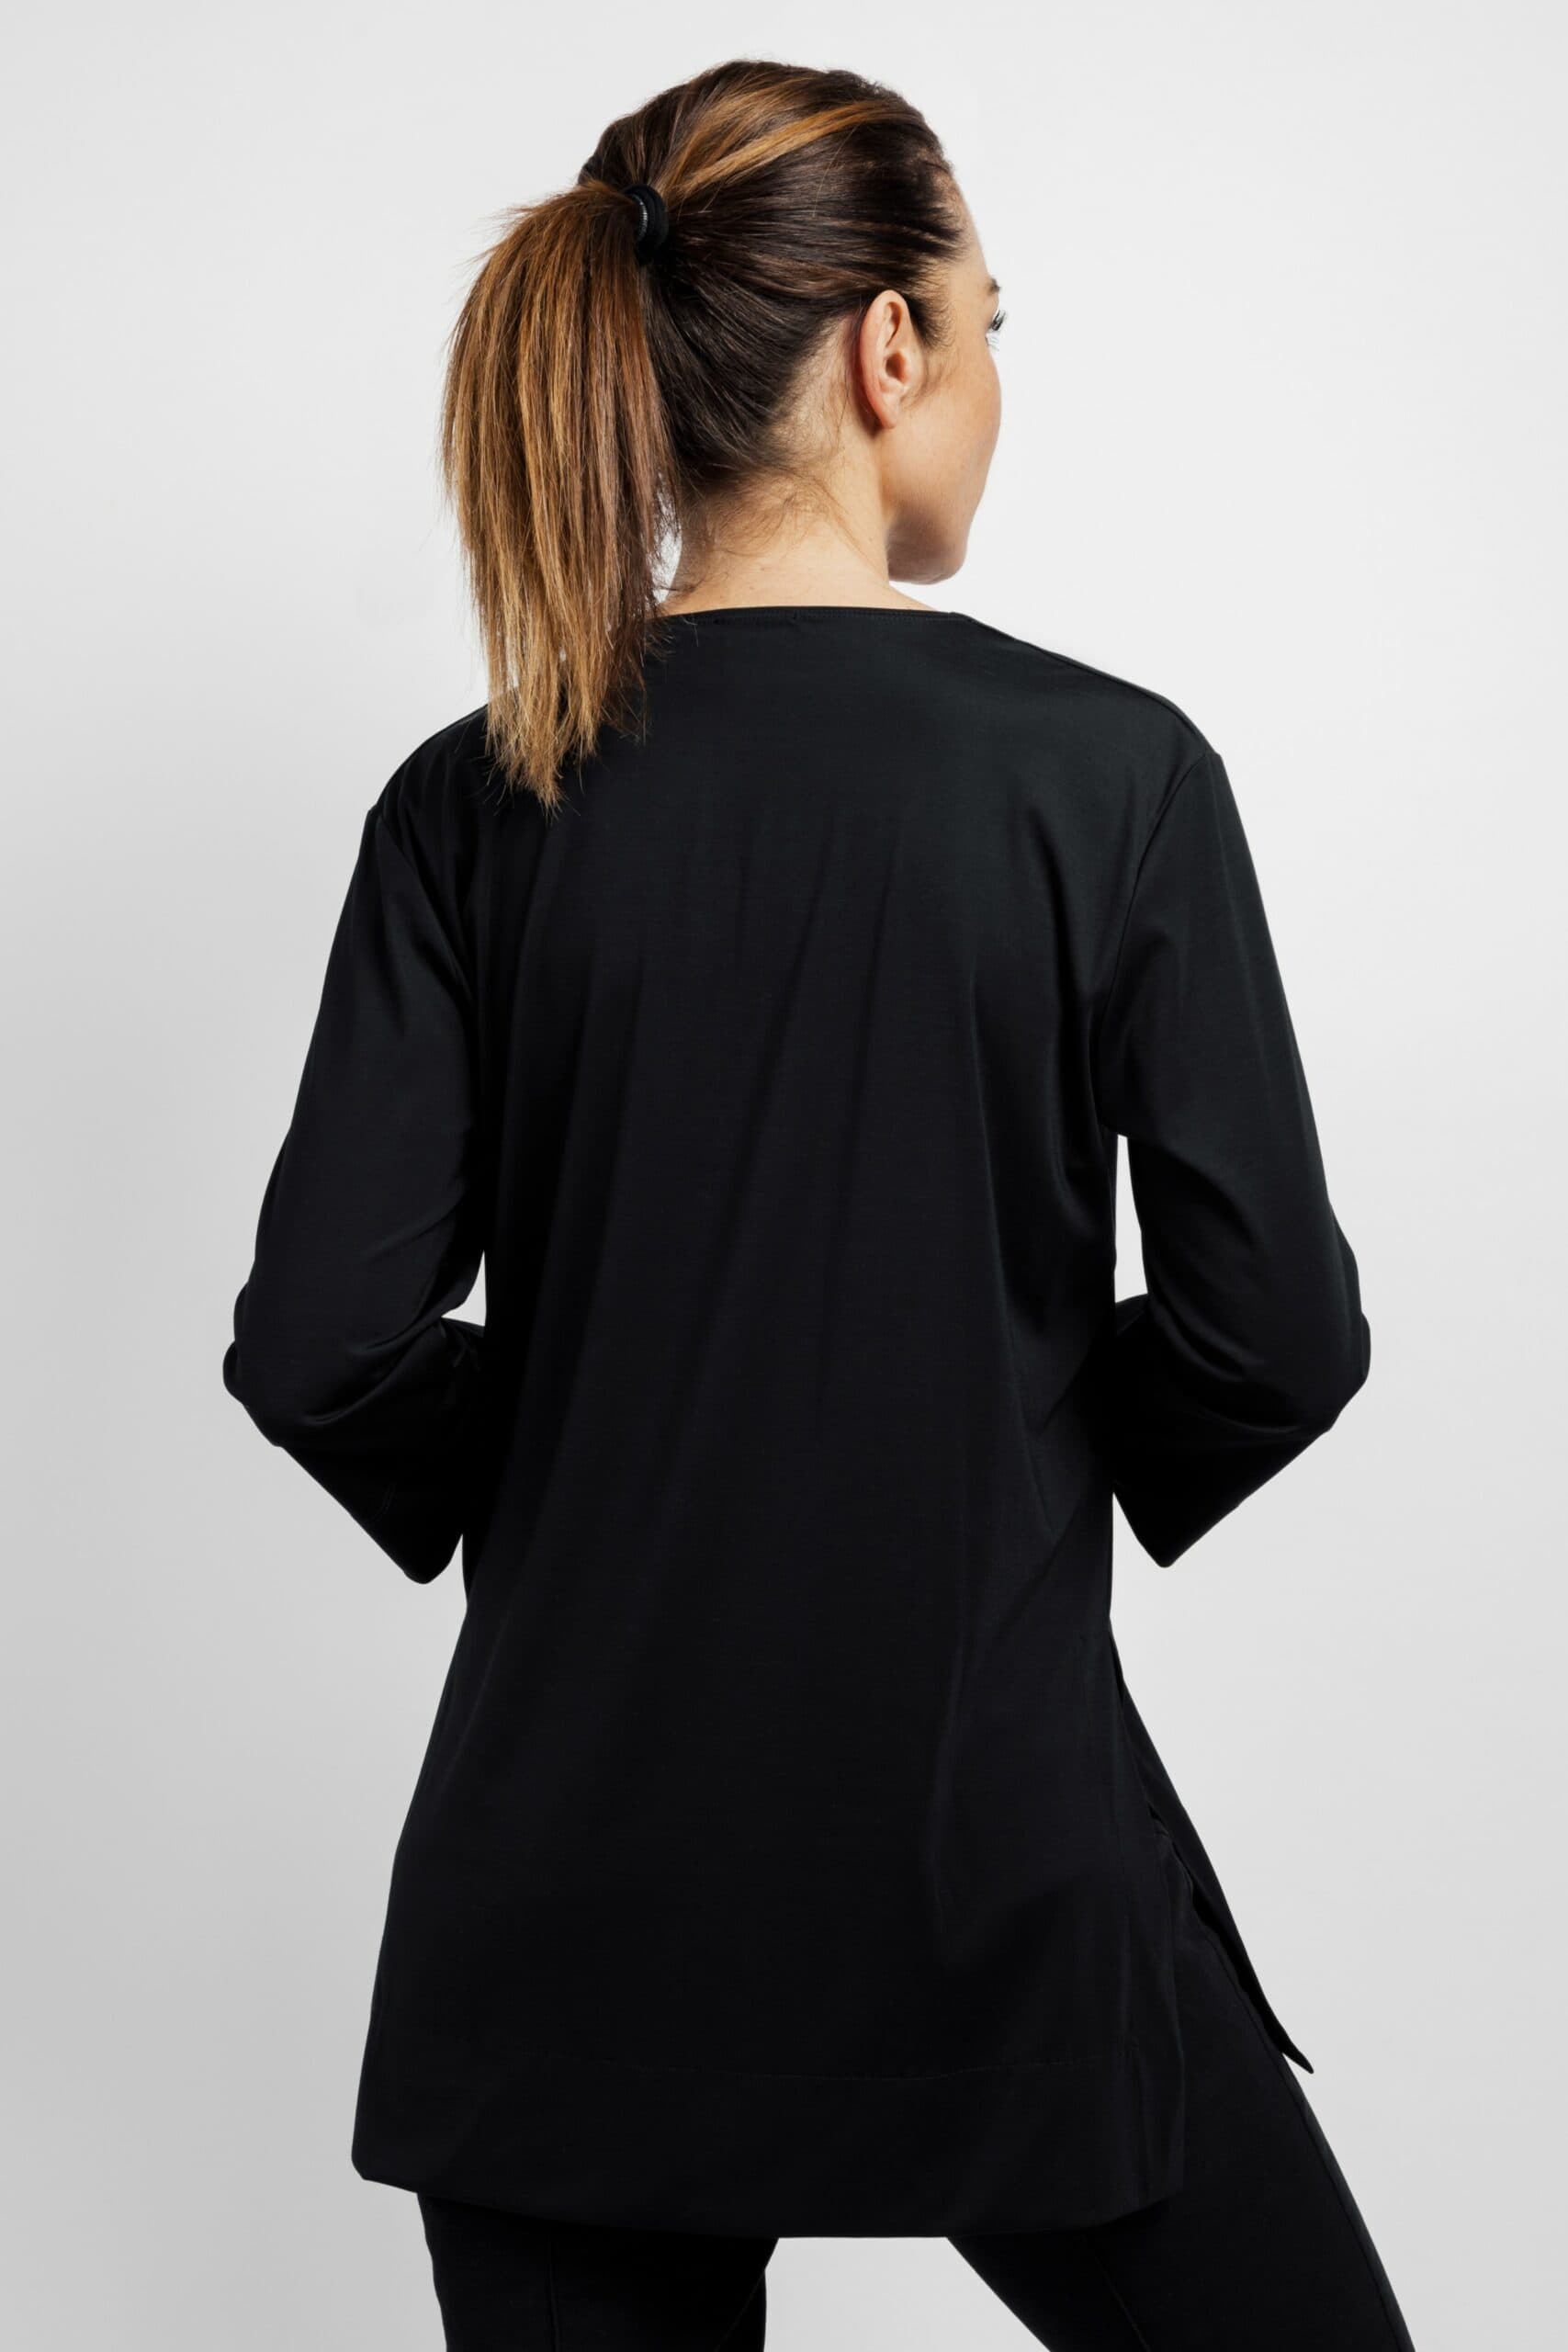 Deep White Black VIC Damen Tunika schwarz mit V-Ausschnitt, Bluse V Ausschnitt mit breiter Blende, gerader Ärmel ¾ Arm, Viskose, Ansicht von hinten